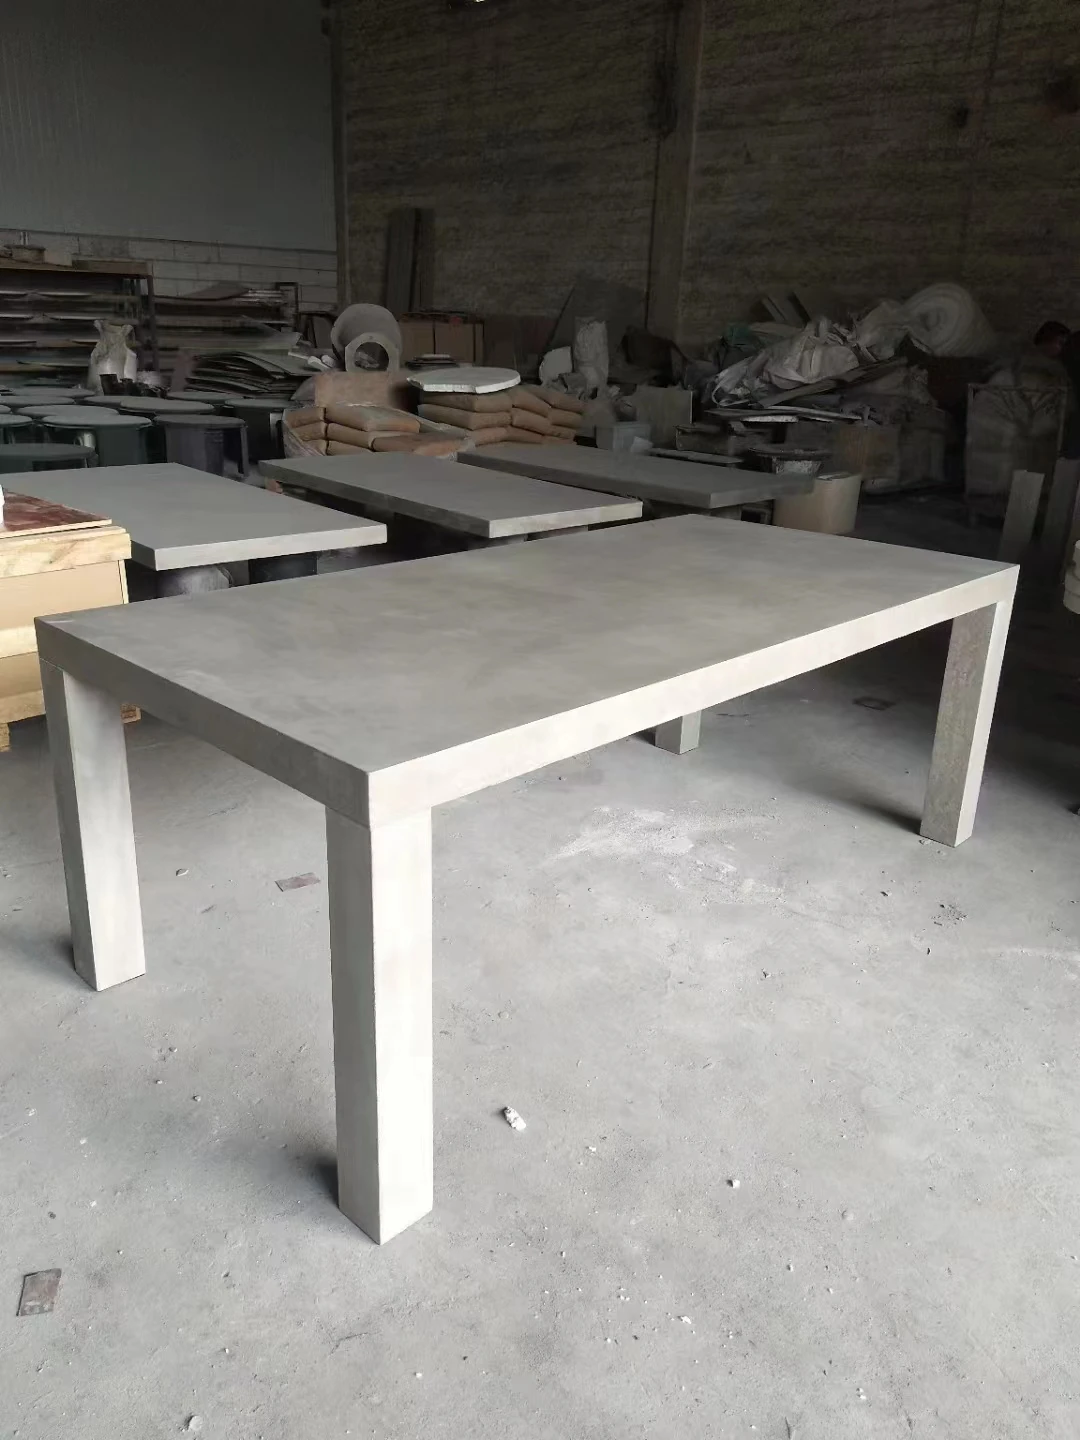 Заводские продажи высокопрочный прочный открытый прямоугольный обеденный стол из стекловолокна, цемента и бетона